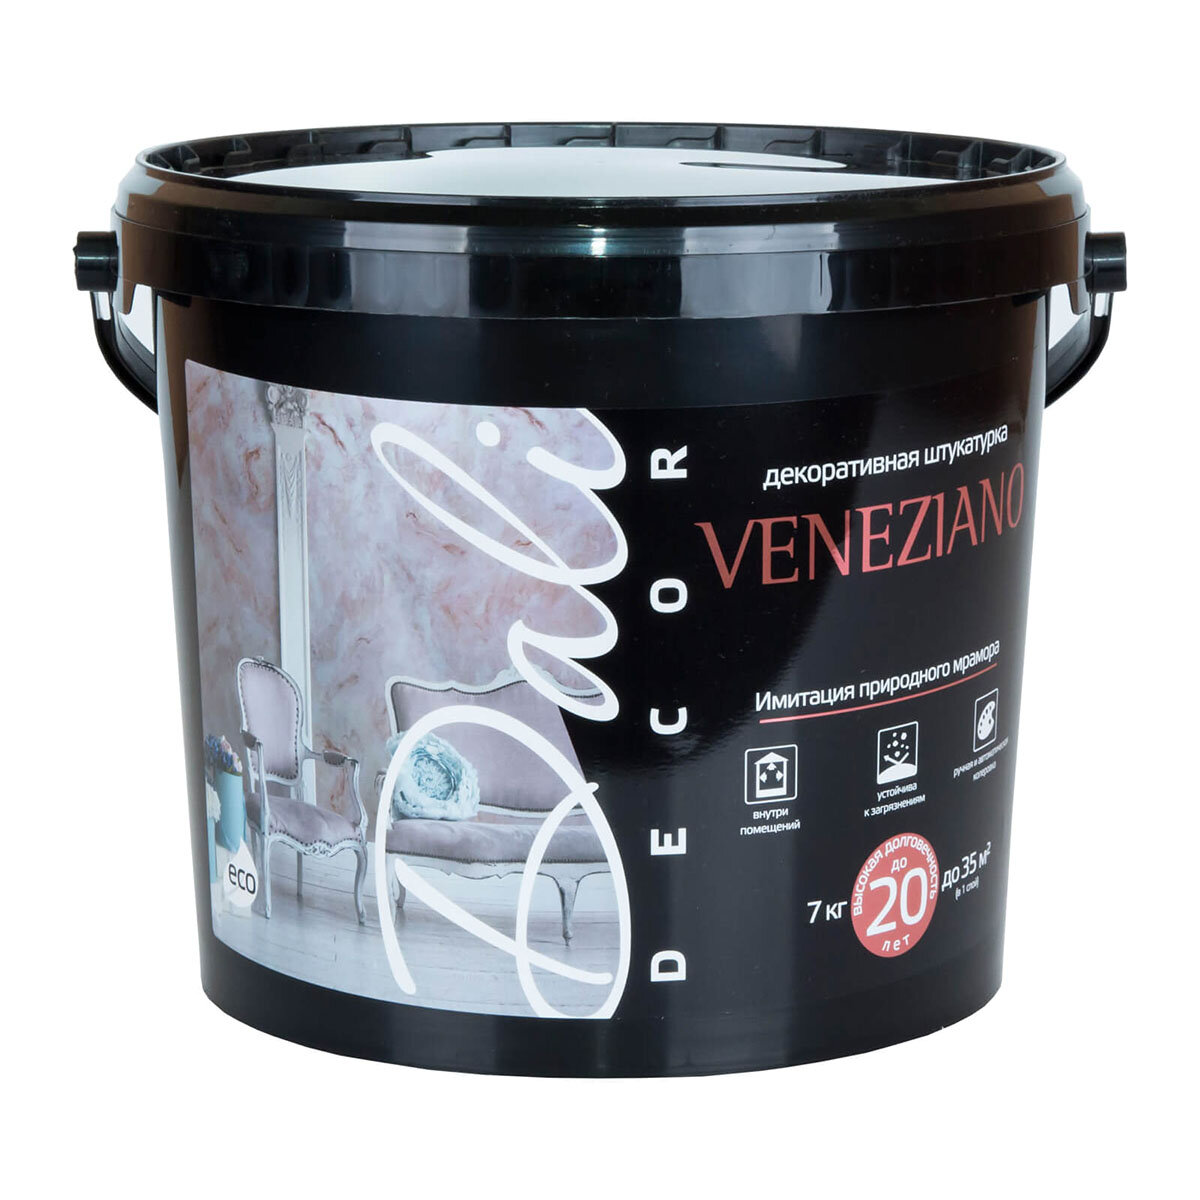 DALI-DECOR VENEZIANO / дали декор венециано декоративная штукатурка акриловая белый 7 кг